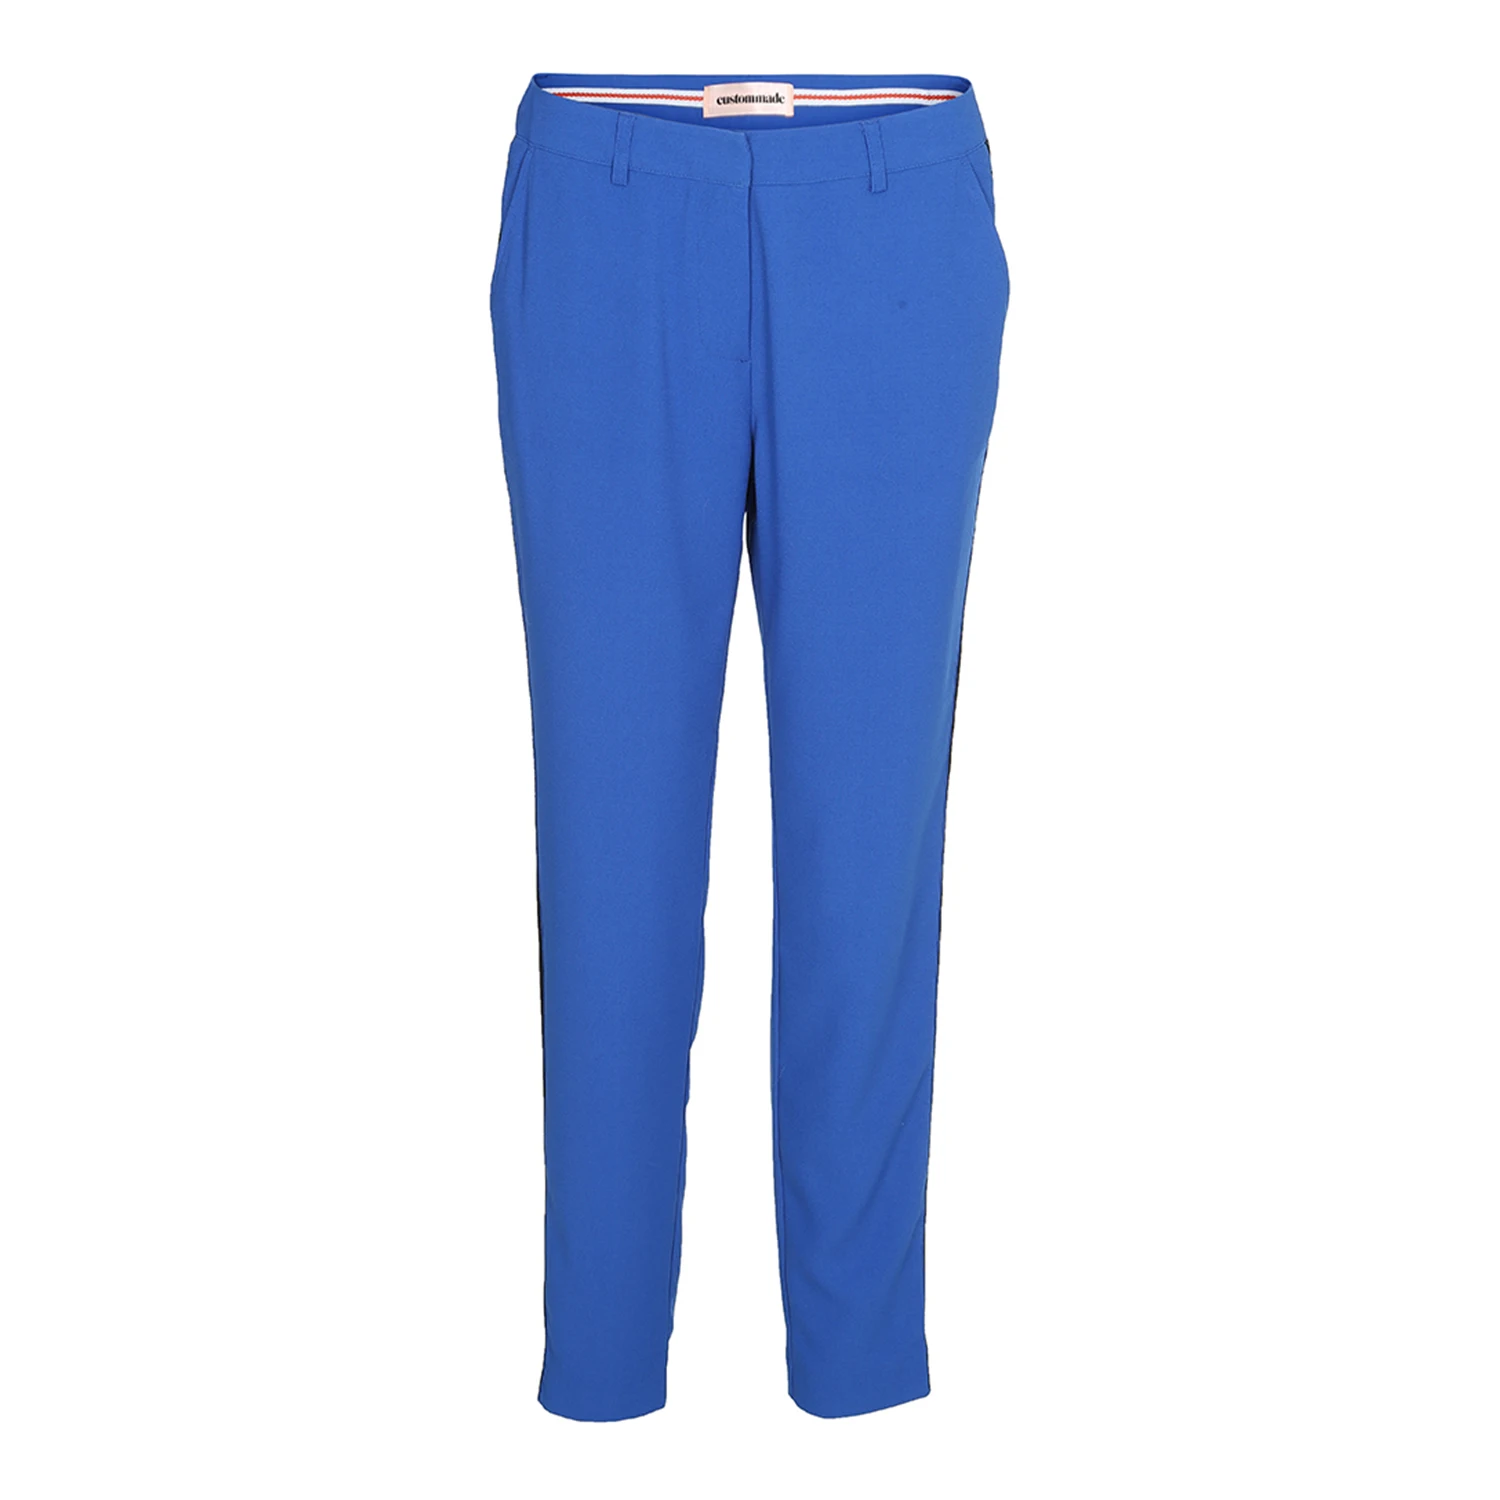 leninismen konkurs Saml op Muno W. Galon Bukser i blå fra custommade - 2 farver online - custommade